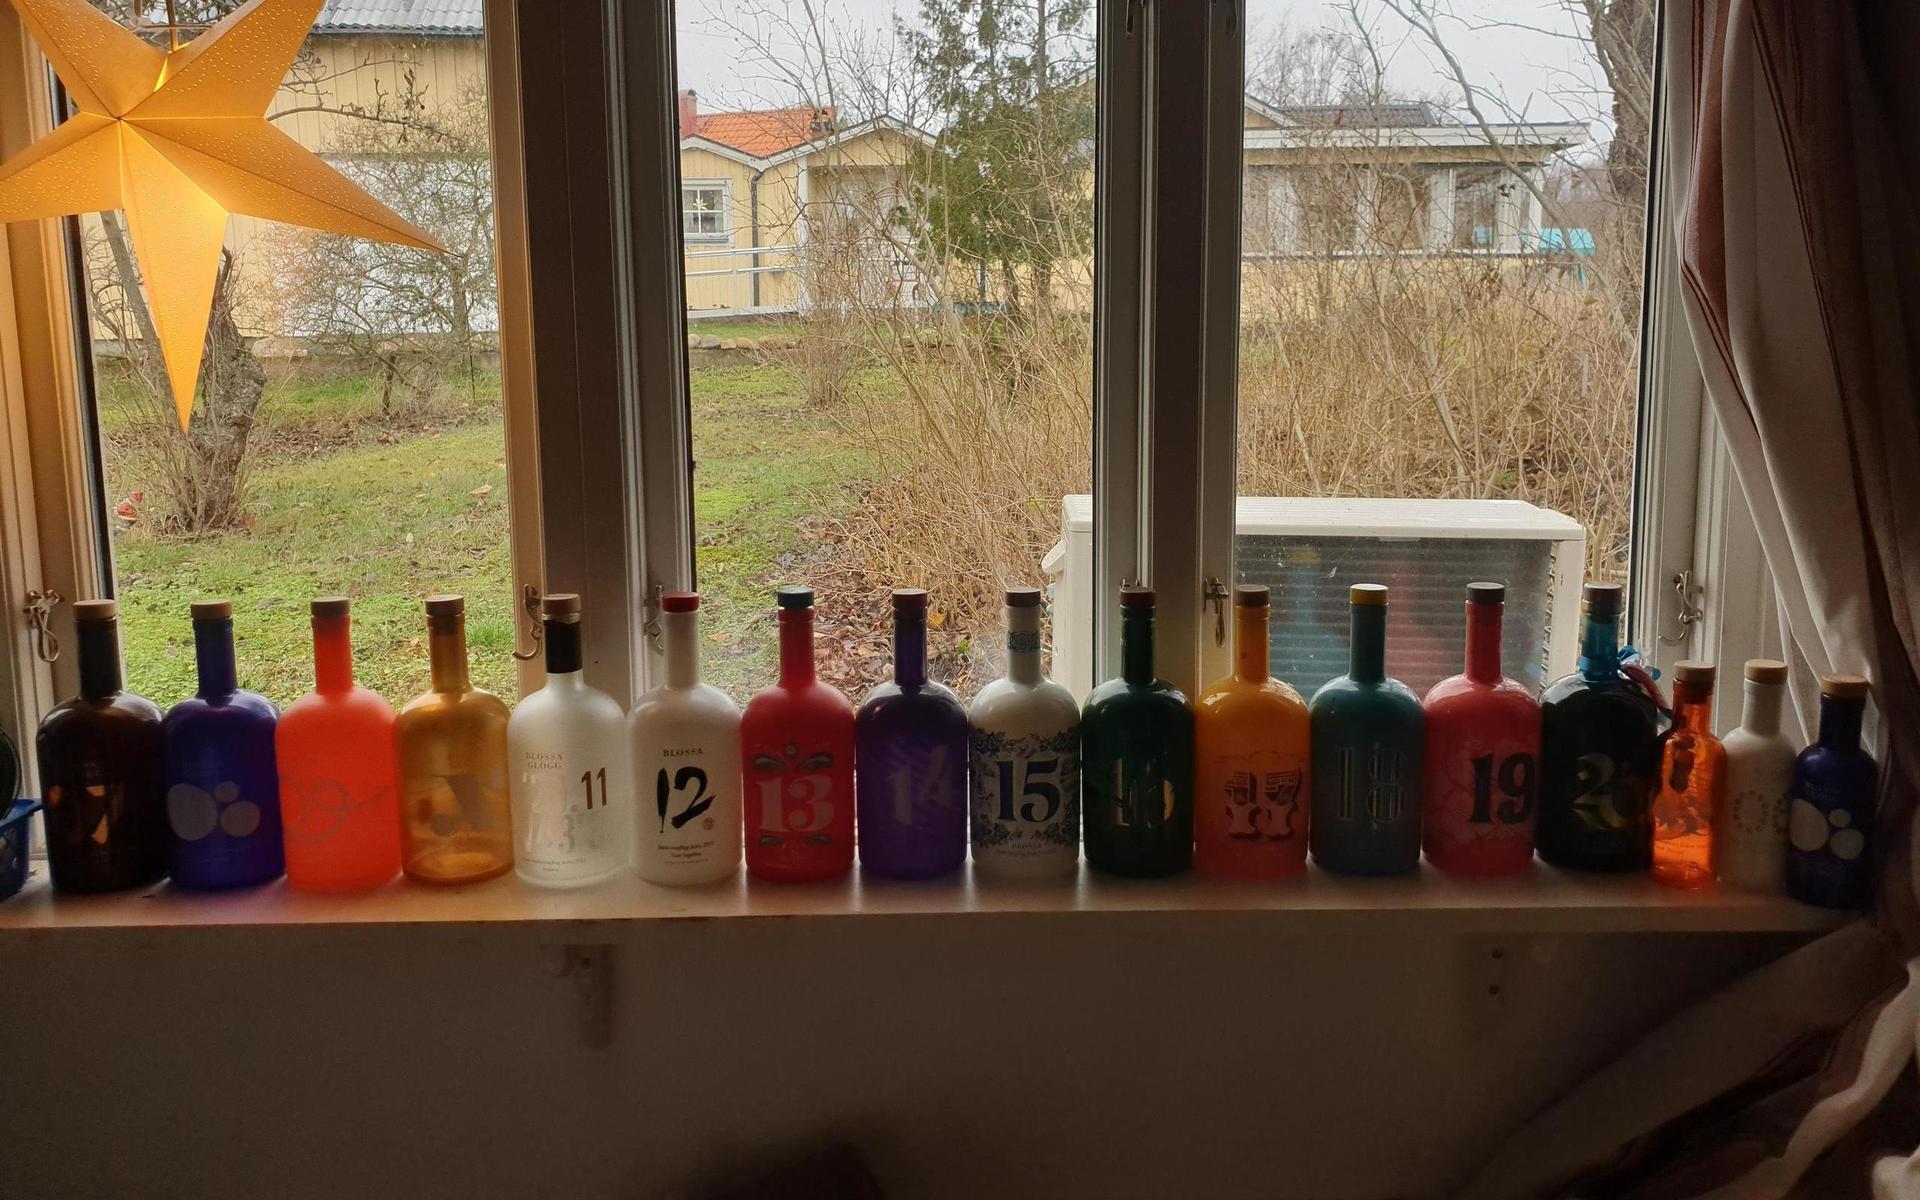 Anki Lejdebys samling med Blossaflaskor blir ett vackert blickfång i fönstret. Klicka dig vidare i bildgalleriet för att se alla årgångar av samlarflaskorna.